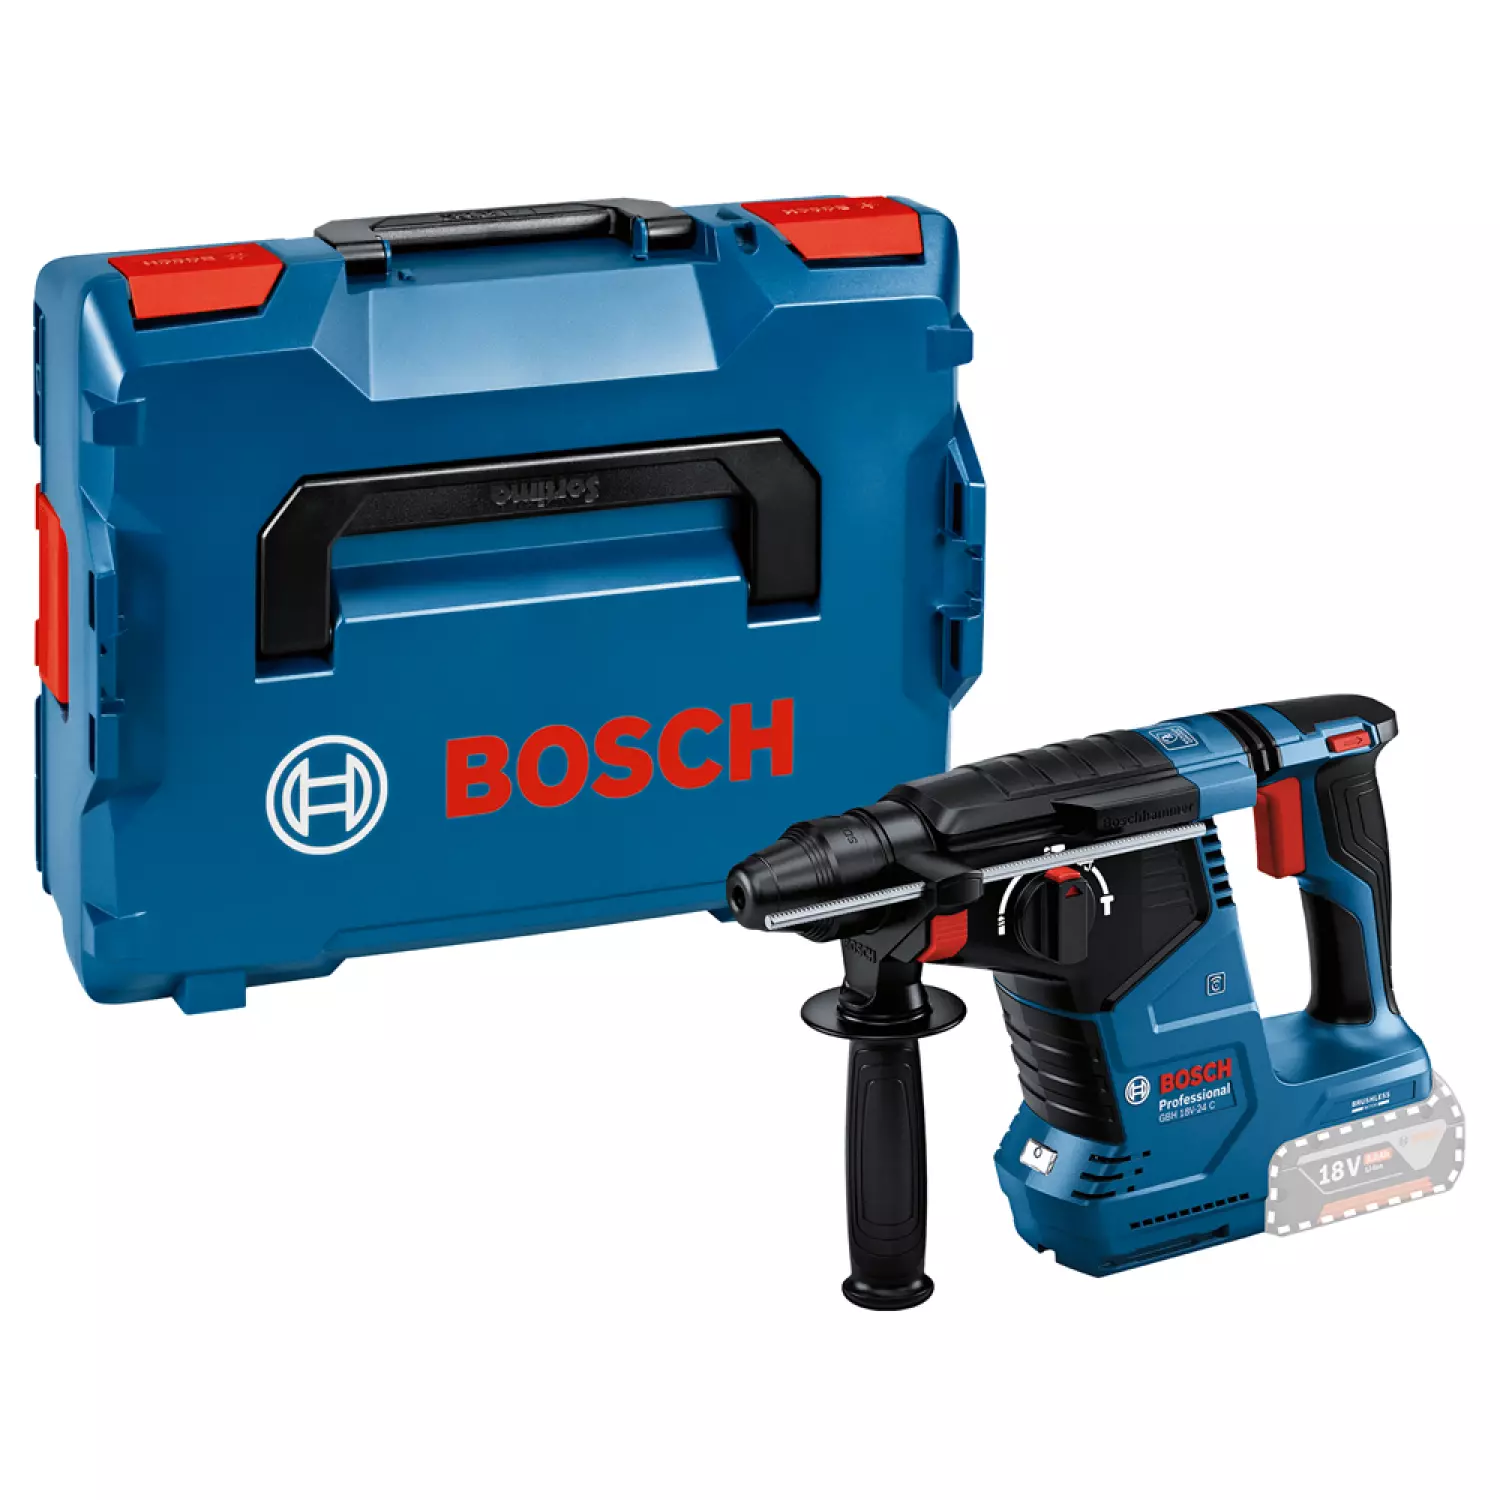 Bosch GBH 18V-24 C Marteau perforateur sans fil